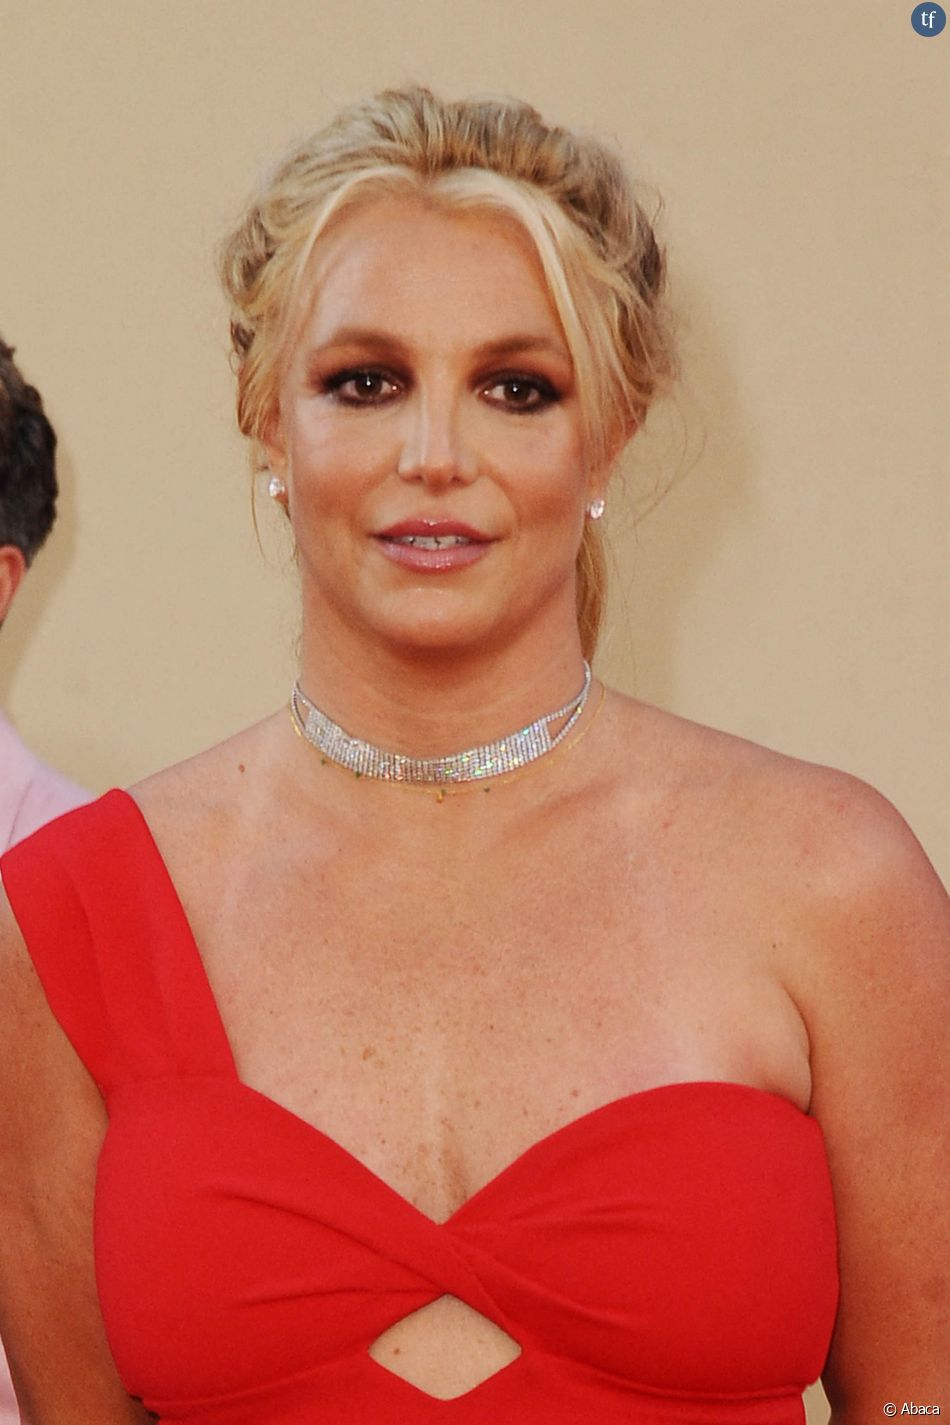  Pourquoi Britney Spears a raison de parler de son avortement  